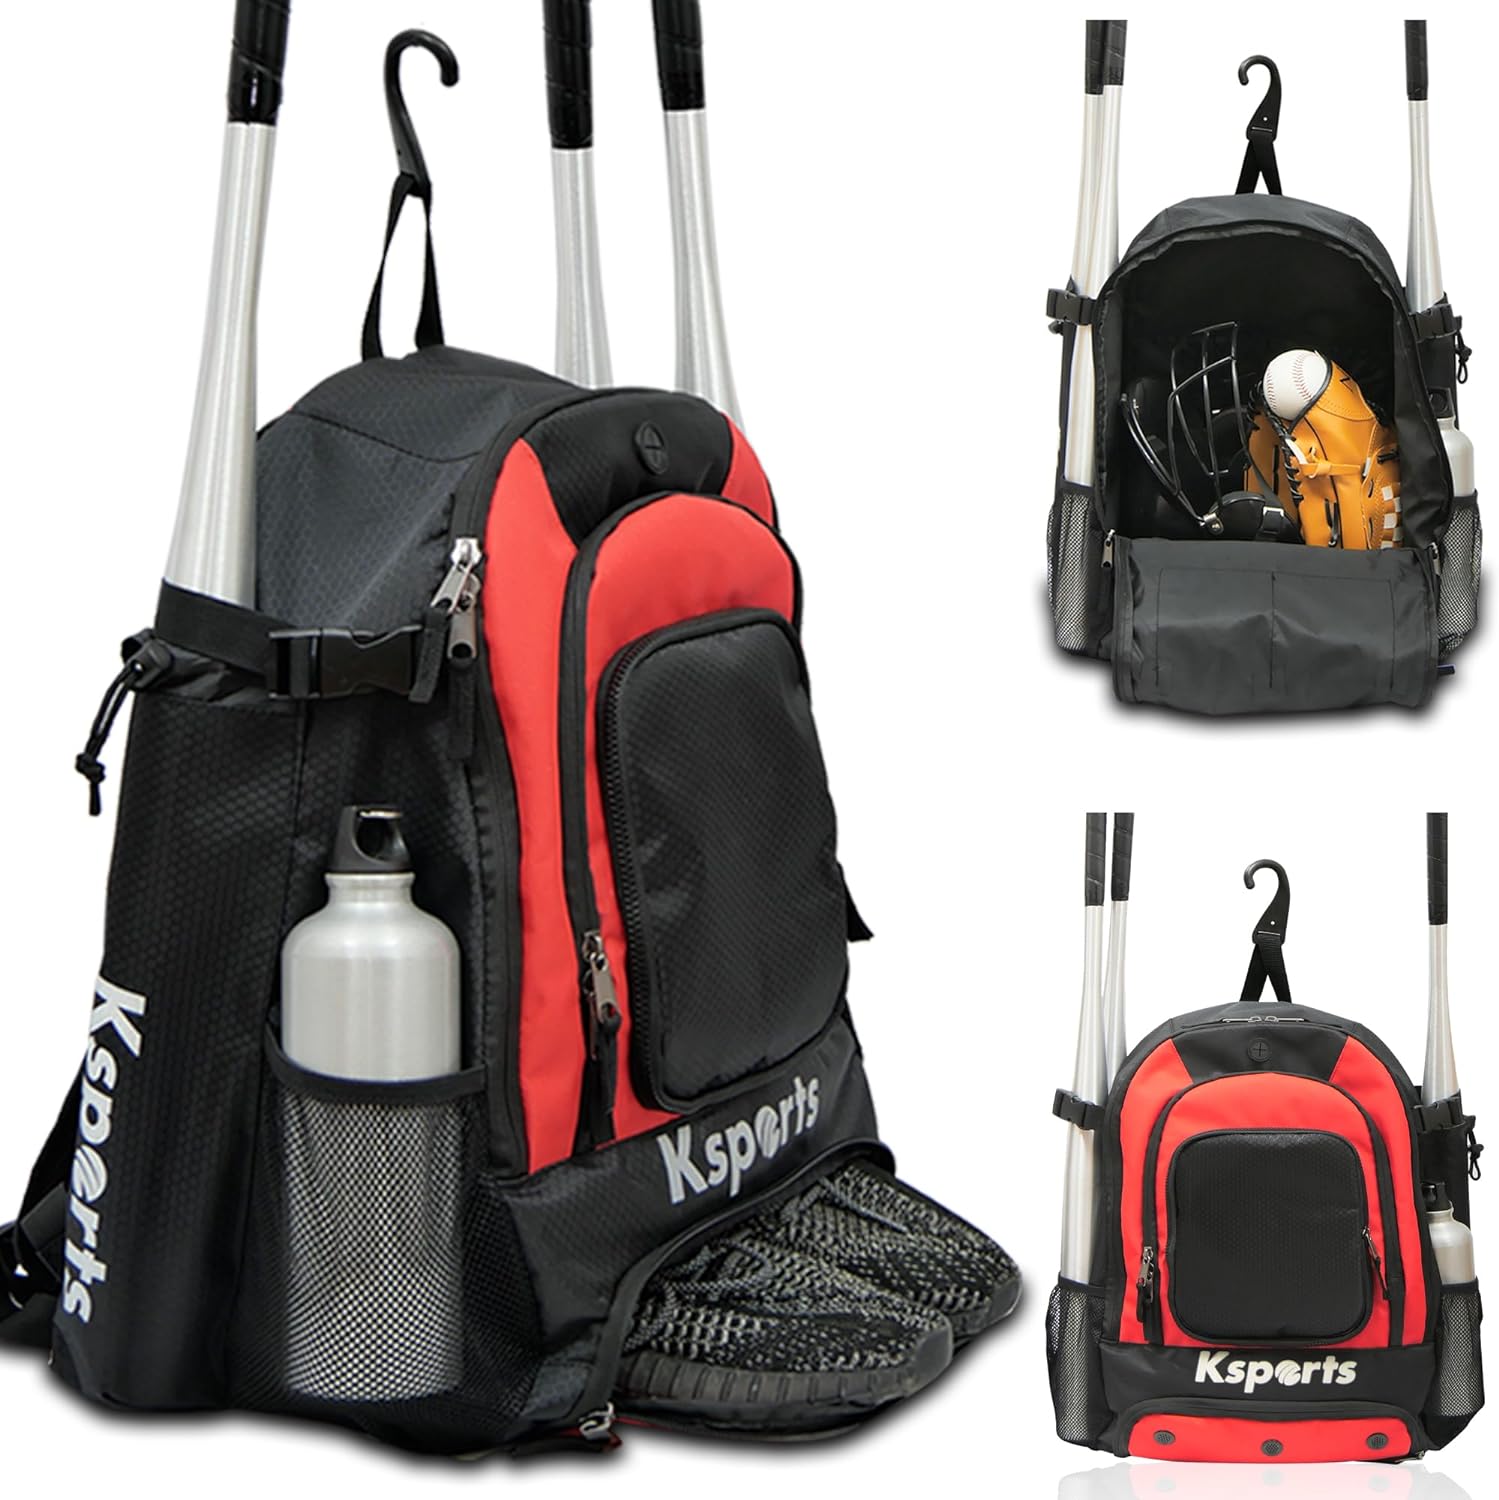 Ksports Baseball Backpack Black & Red (FS1001)